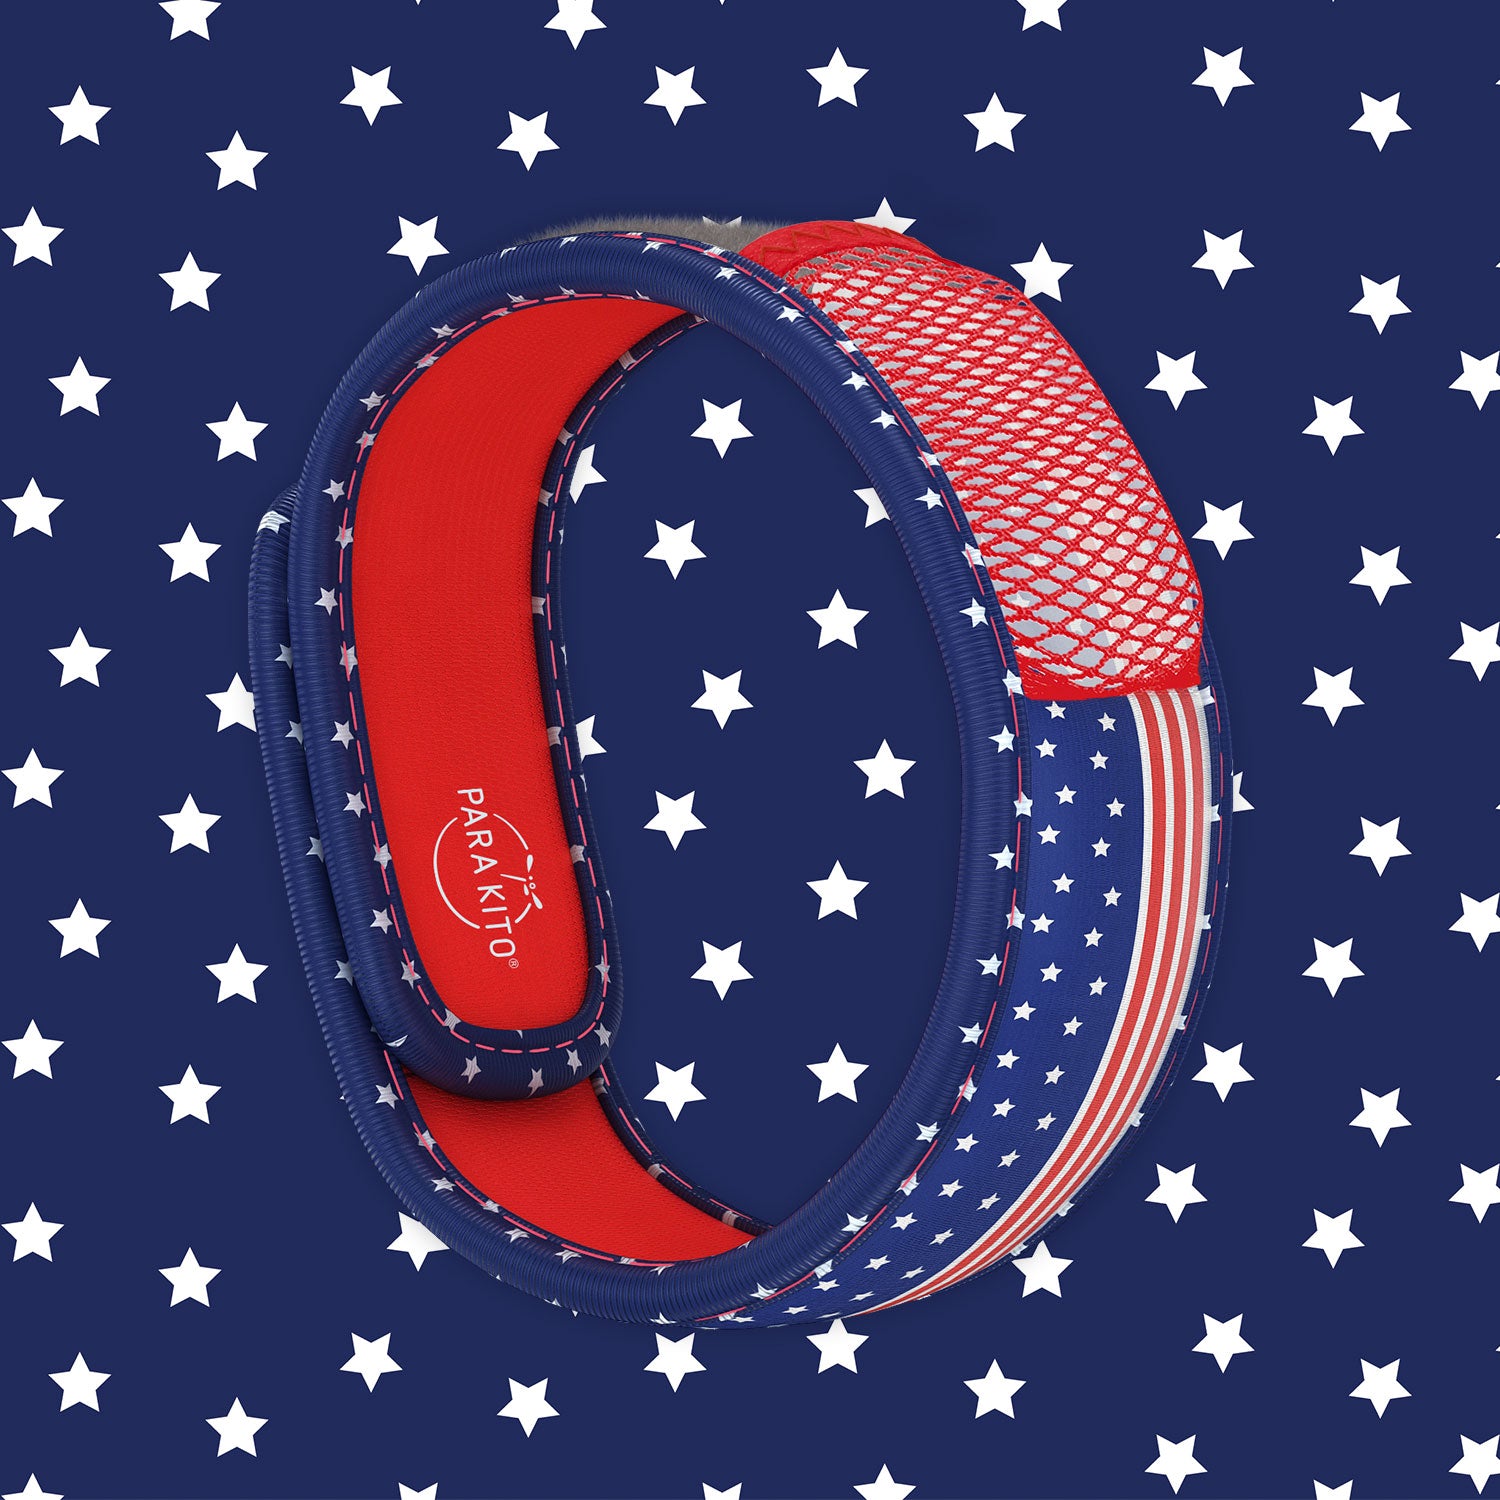 Mosquito Repellent Wristband - Patriot - USA Flag